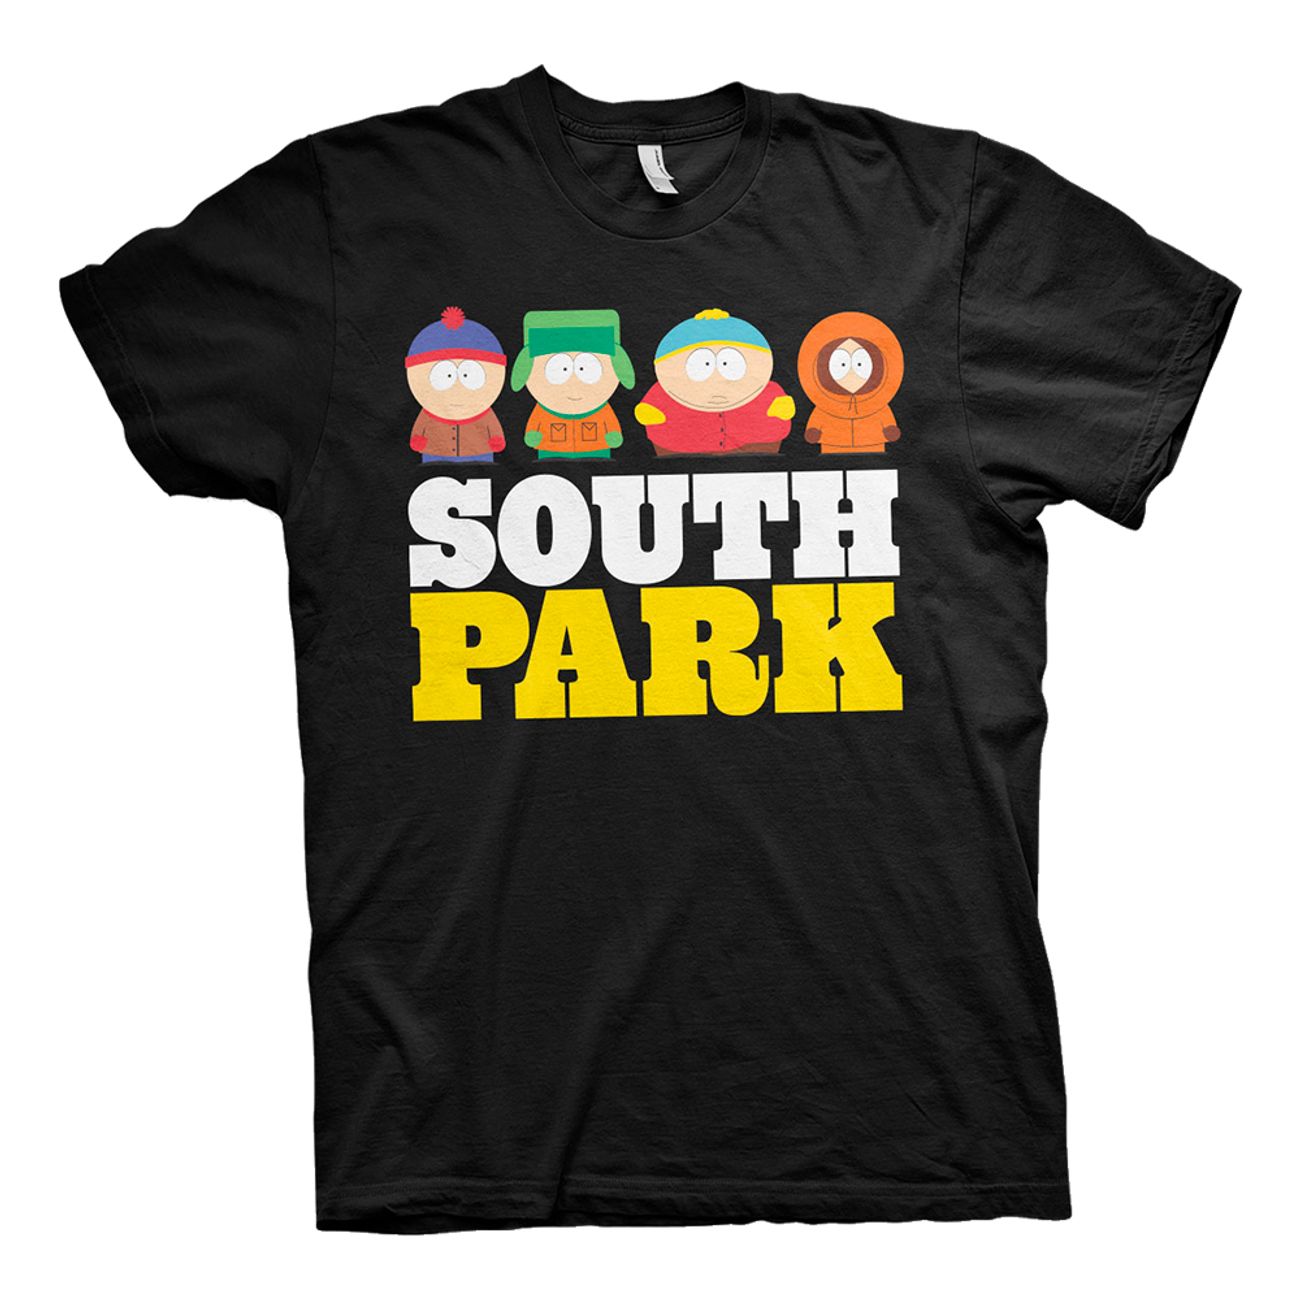 south-park-t-shirt-74821-1